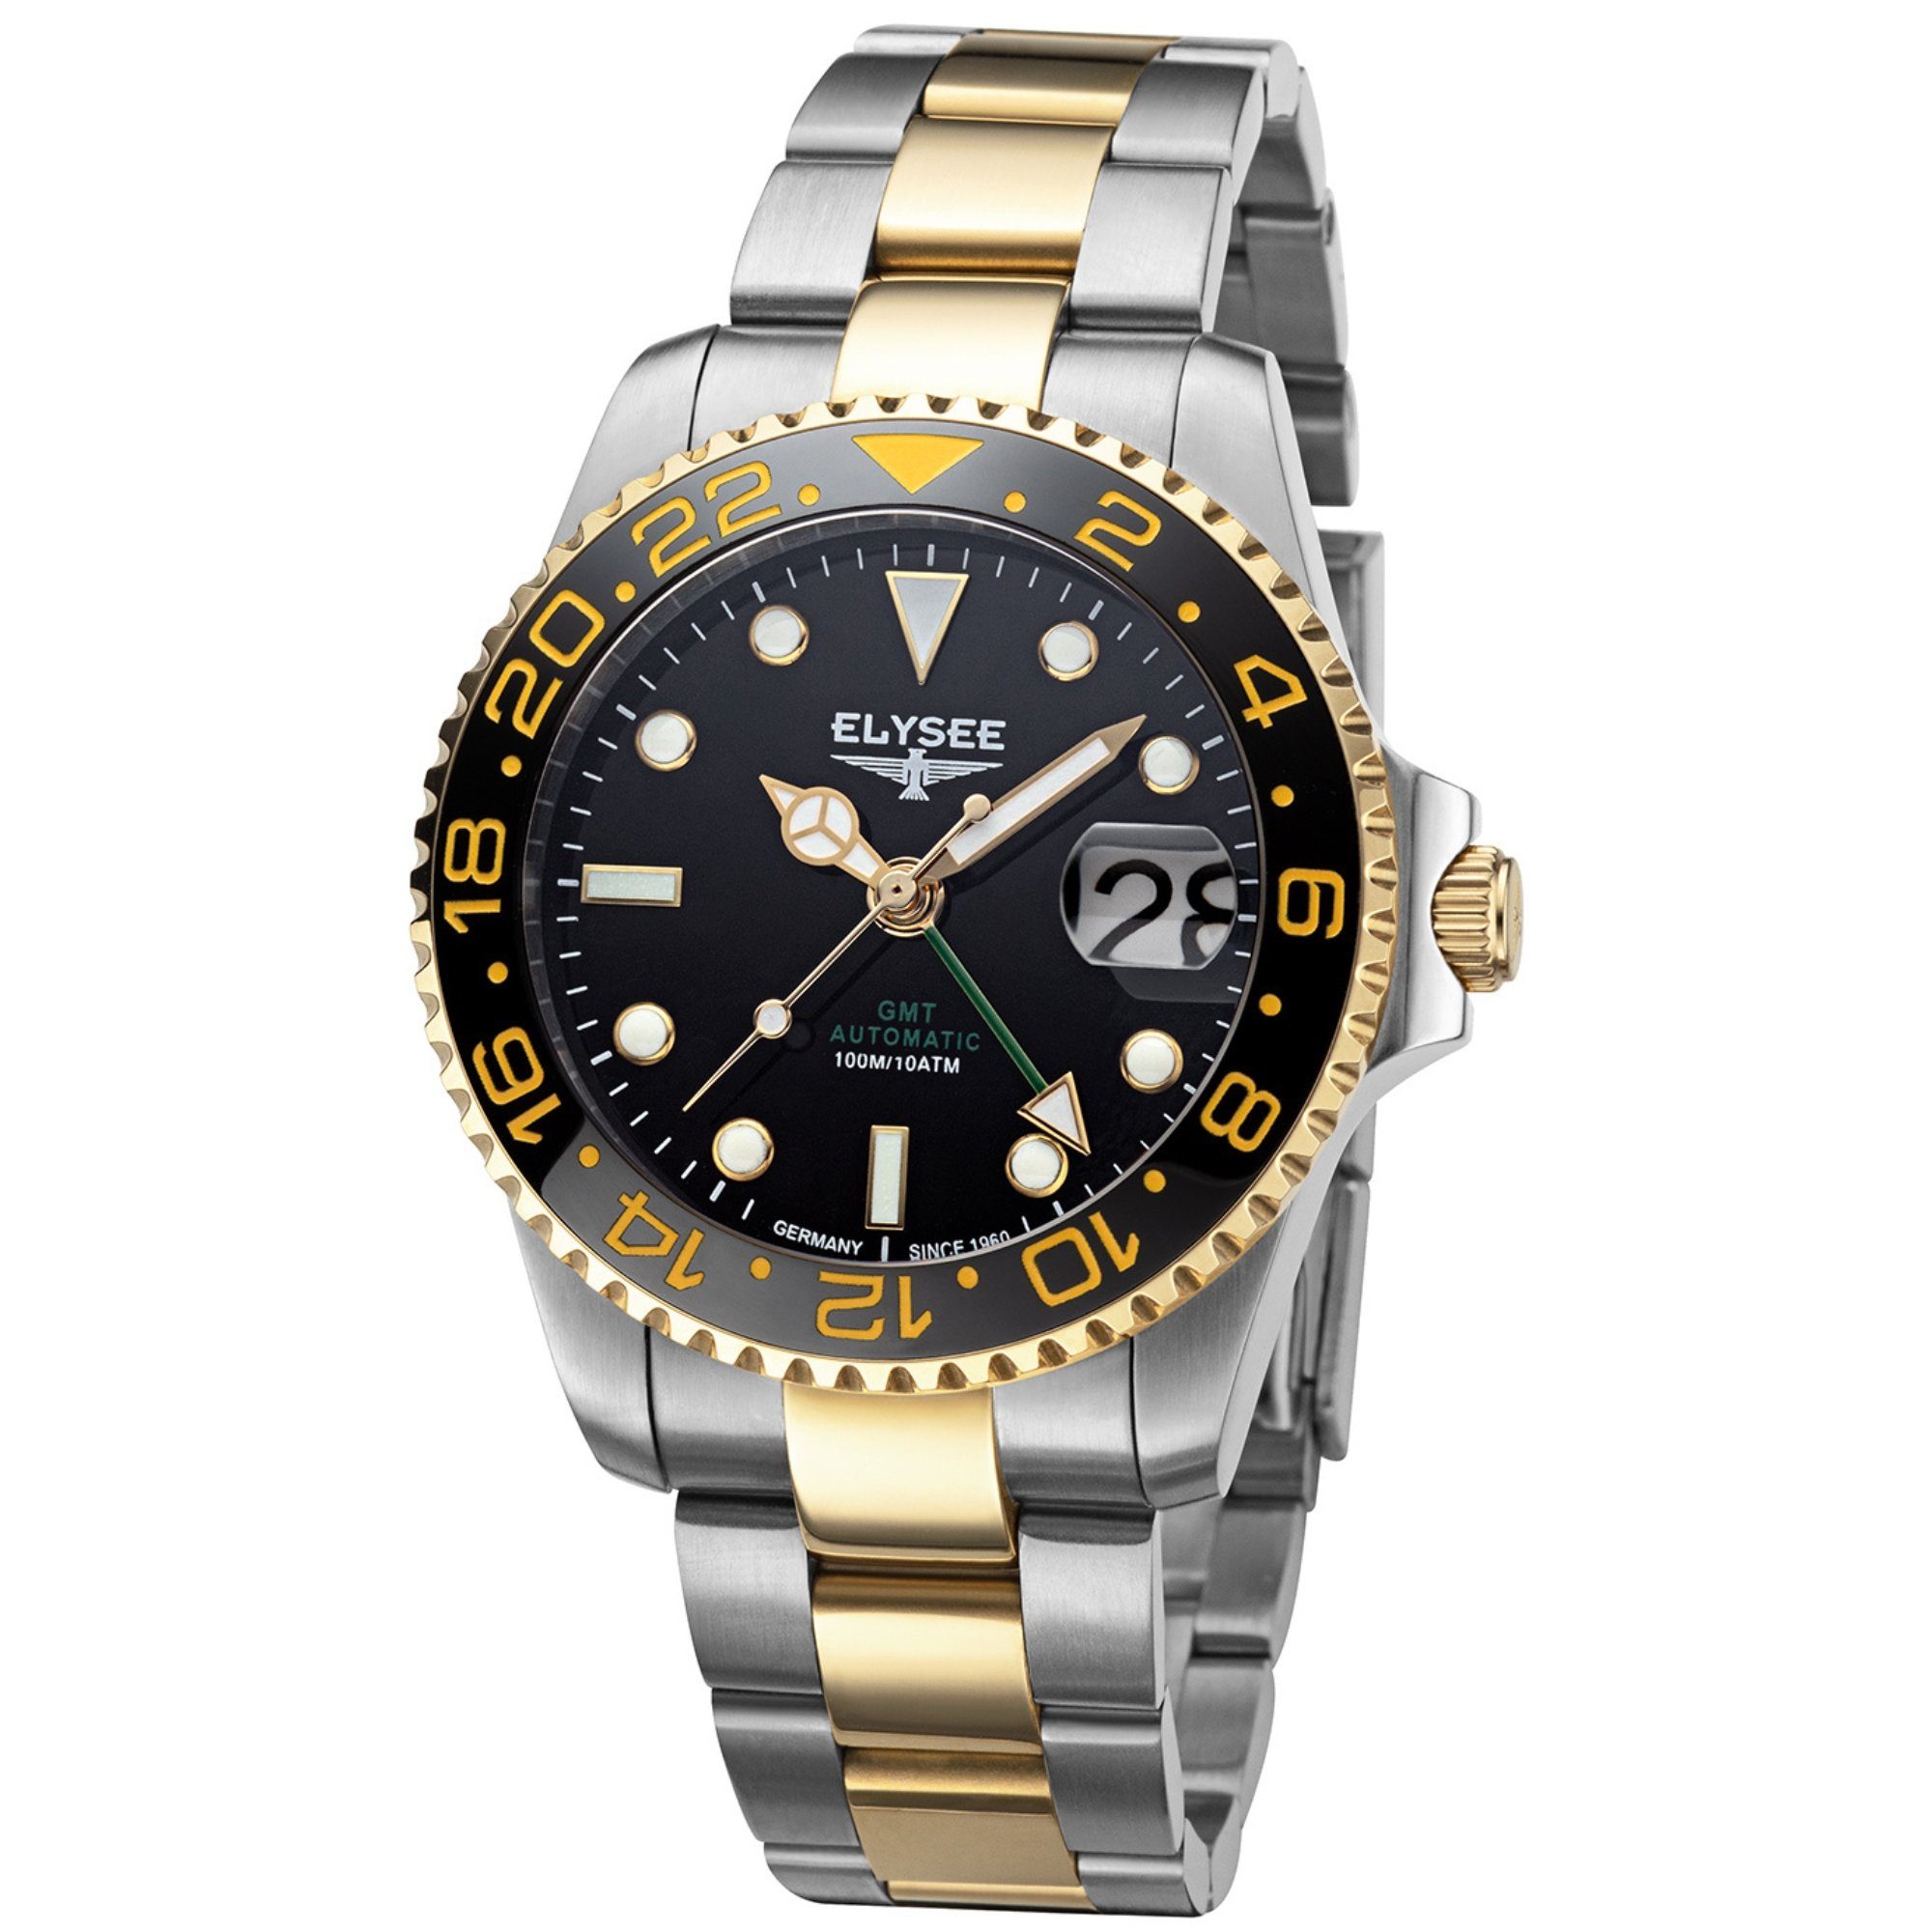 Elysee Automatikuhr GMT AUTOMATIC Herrenuhr 40,5mm Edelstahl 4-Zeiger-Uhr silber, ideal auch als Geschenk silber gold